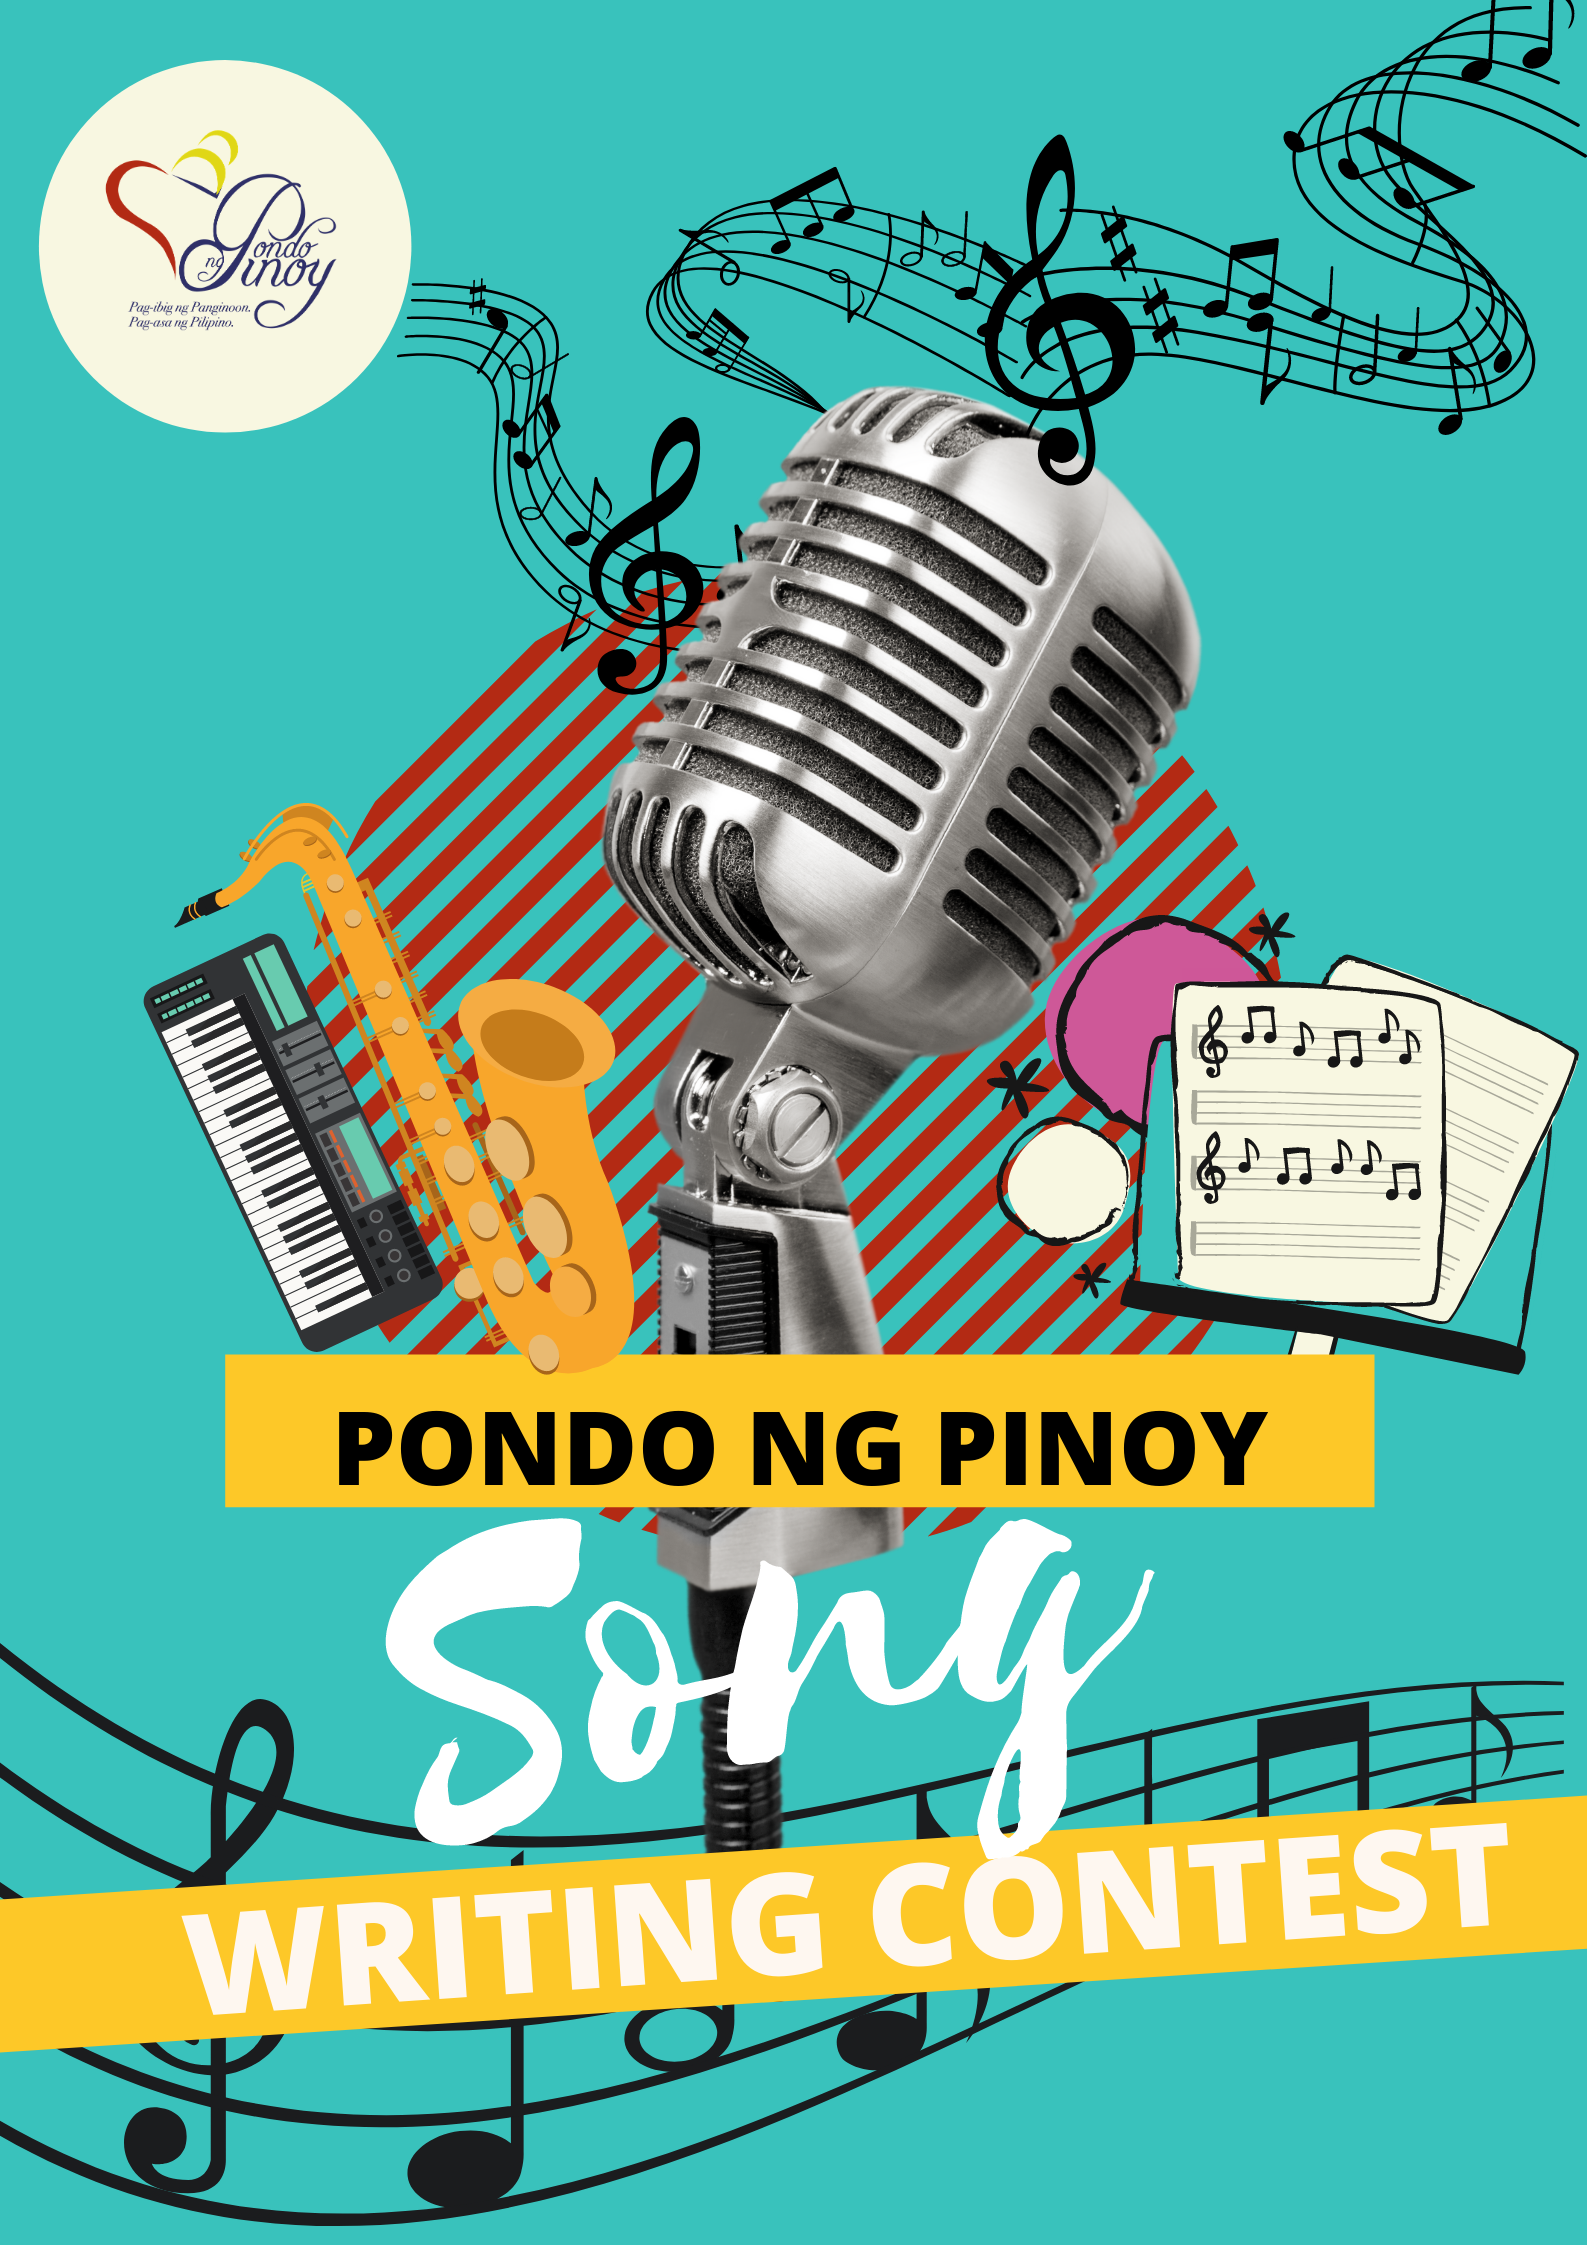 Pondo ng Pinoy » Pondo ng Pinoy firstever song writing contest held